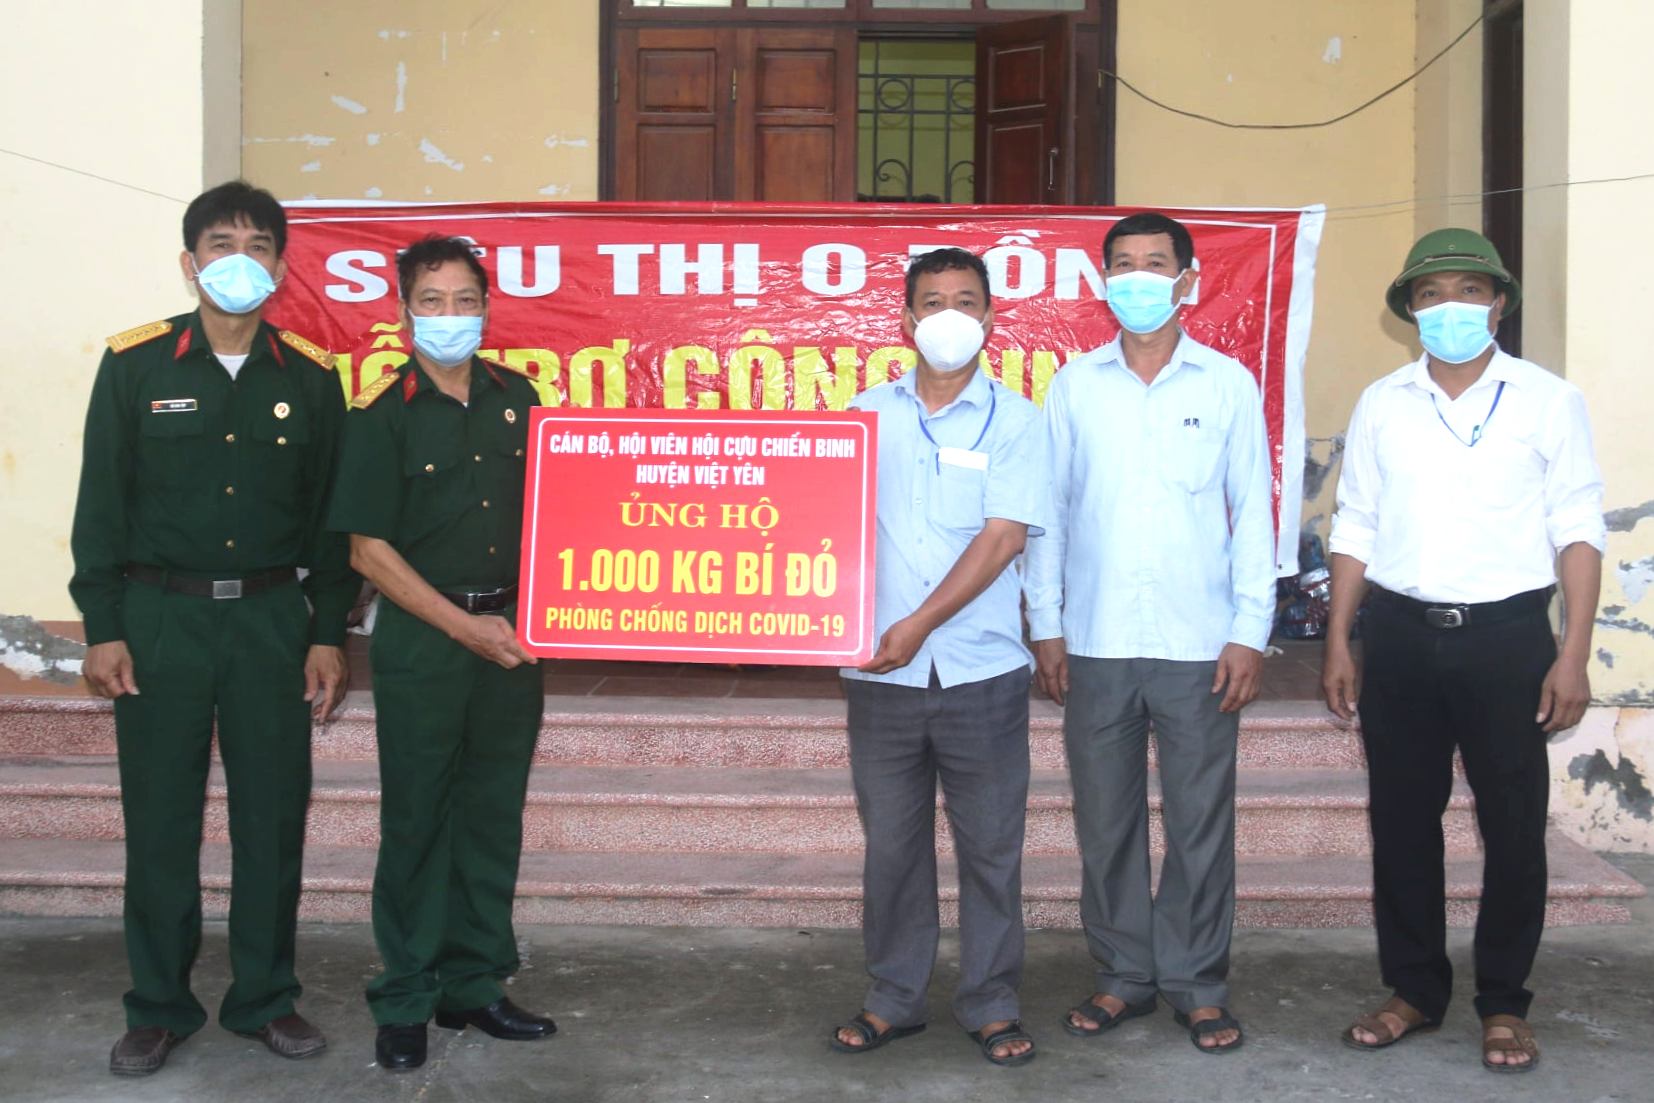 Bắc Giang: Hội cựu chiến binh huyên Việt Yên trên tuyến đầu phòng chống dịch Covid - 19 